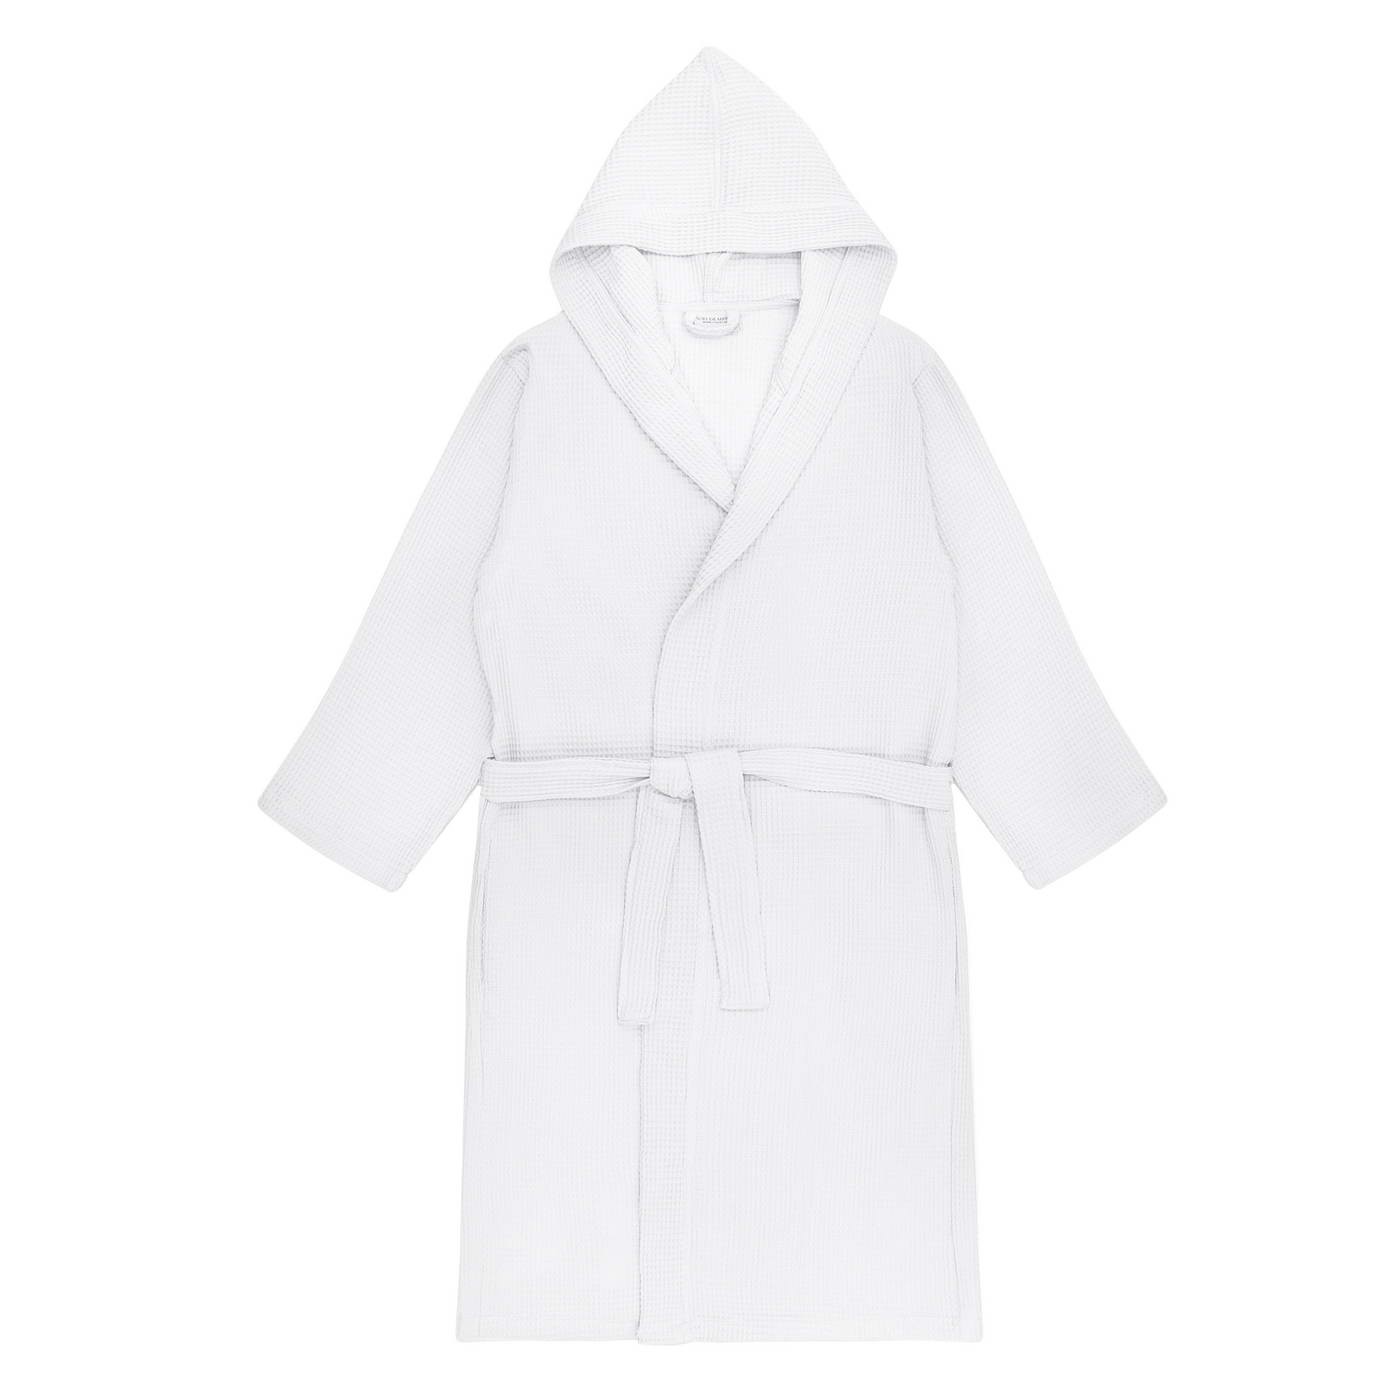 Банный халат Naomi цвет: белый (S), размер S sofi937233 Банный халат Naomi цвет: белый (S) - фото 1